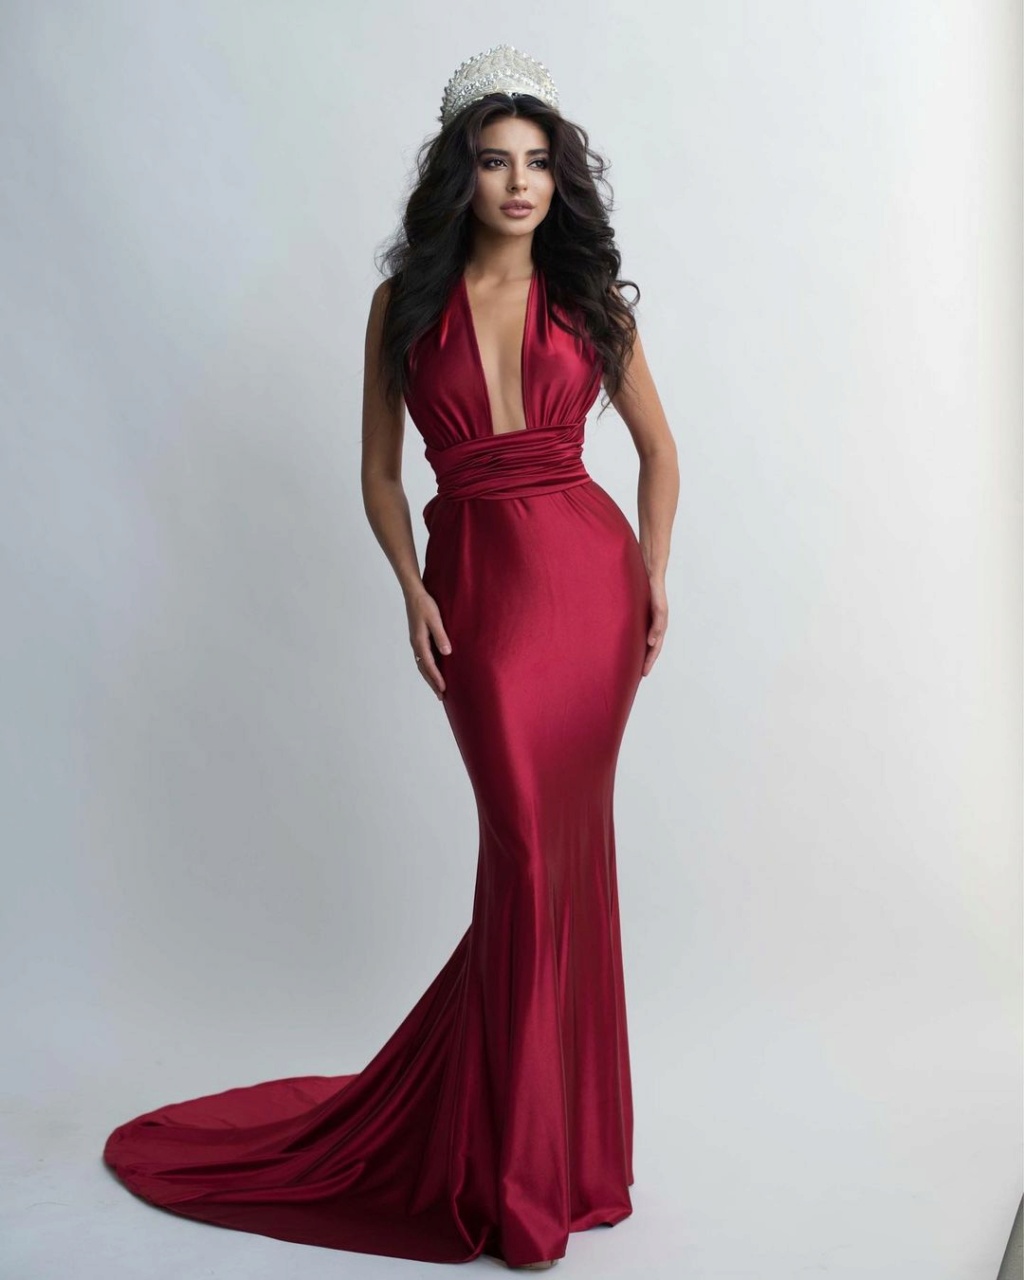 Miss Armenia 2021 24088215